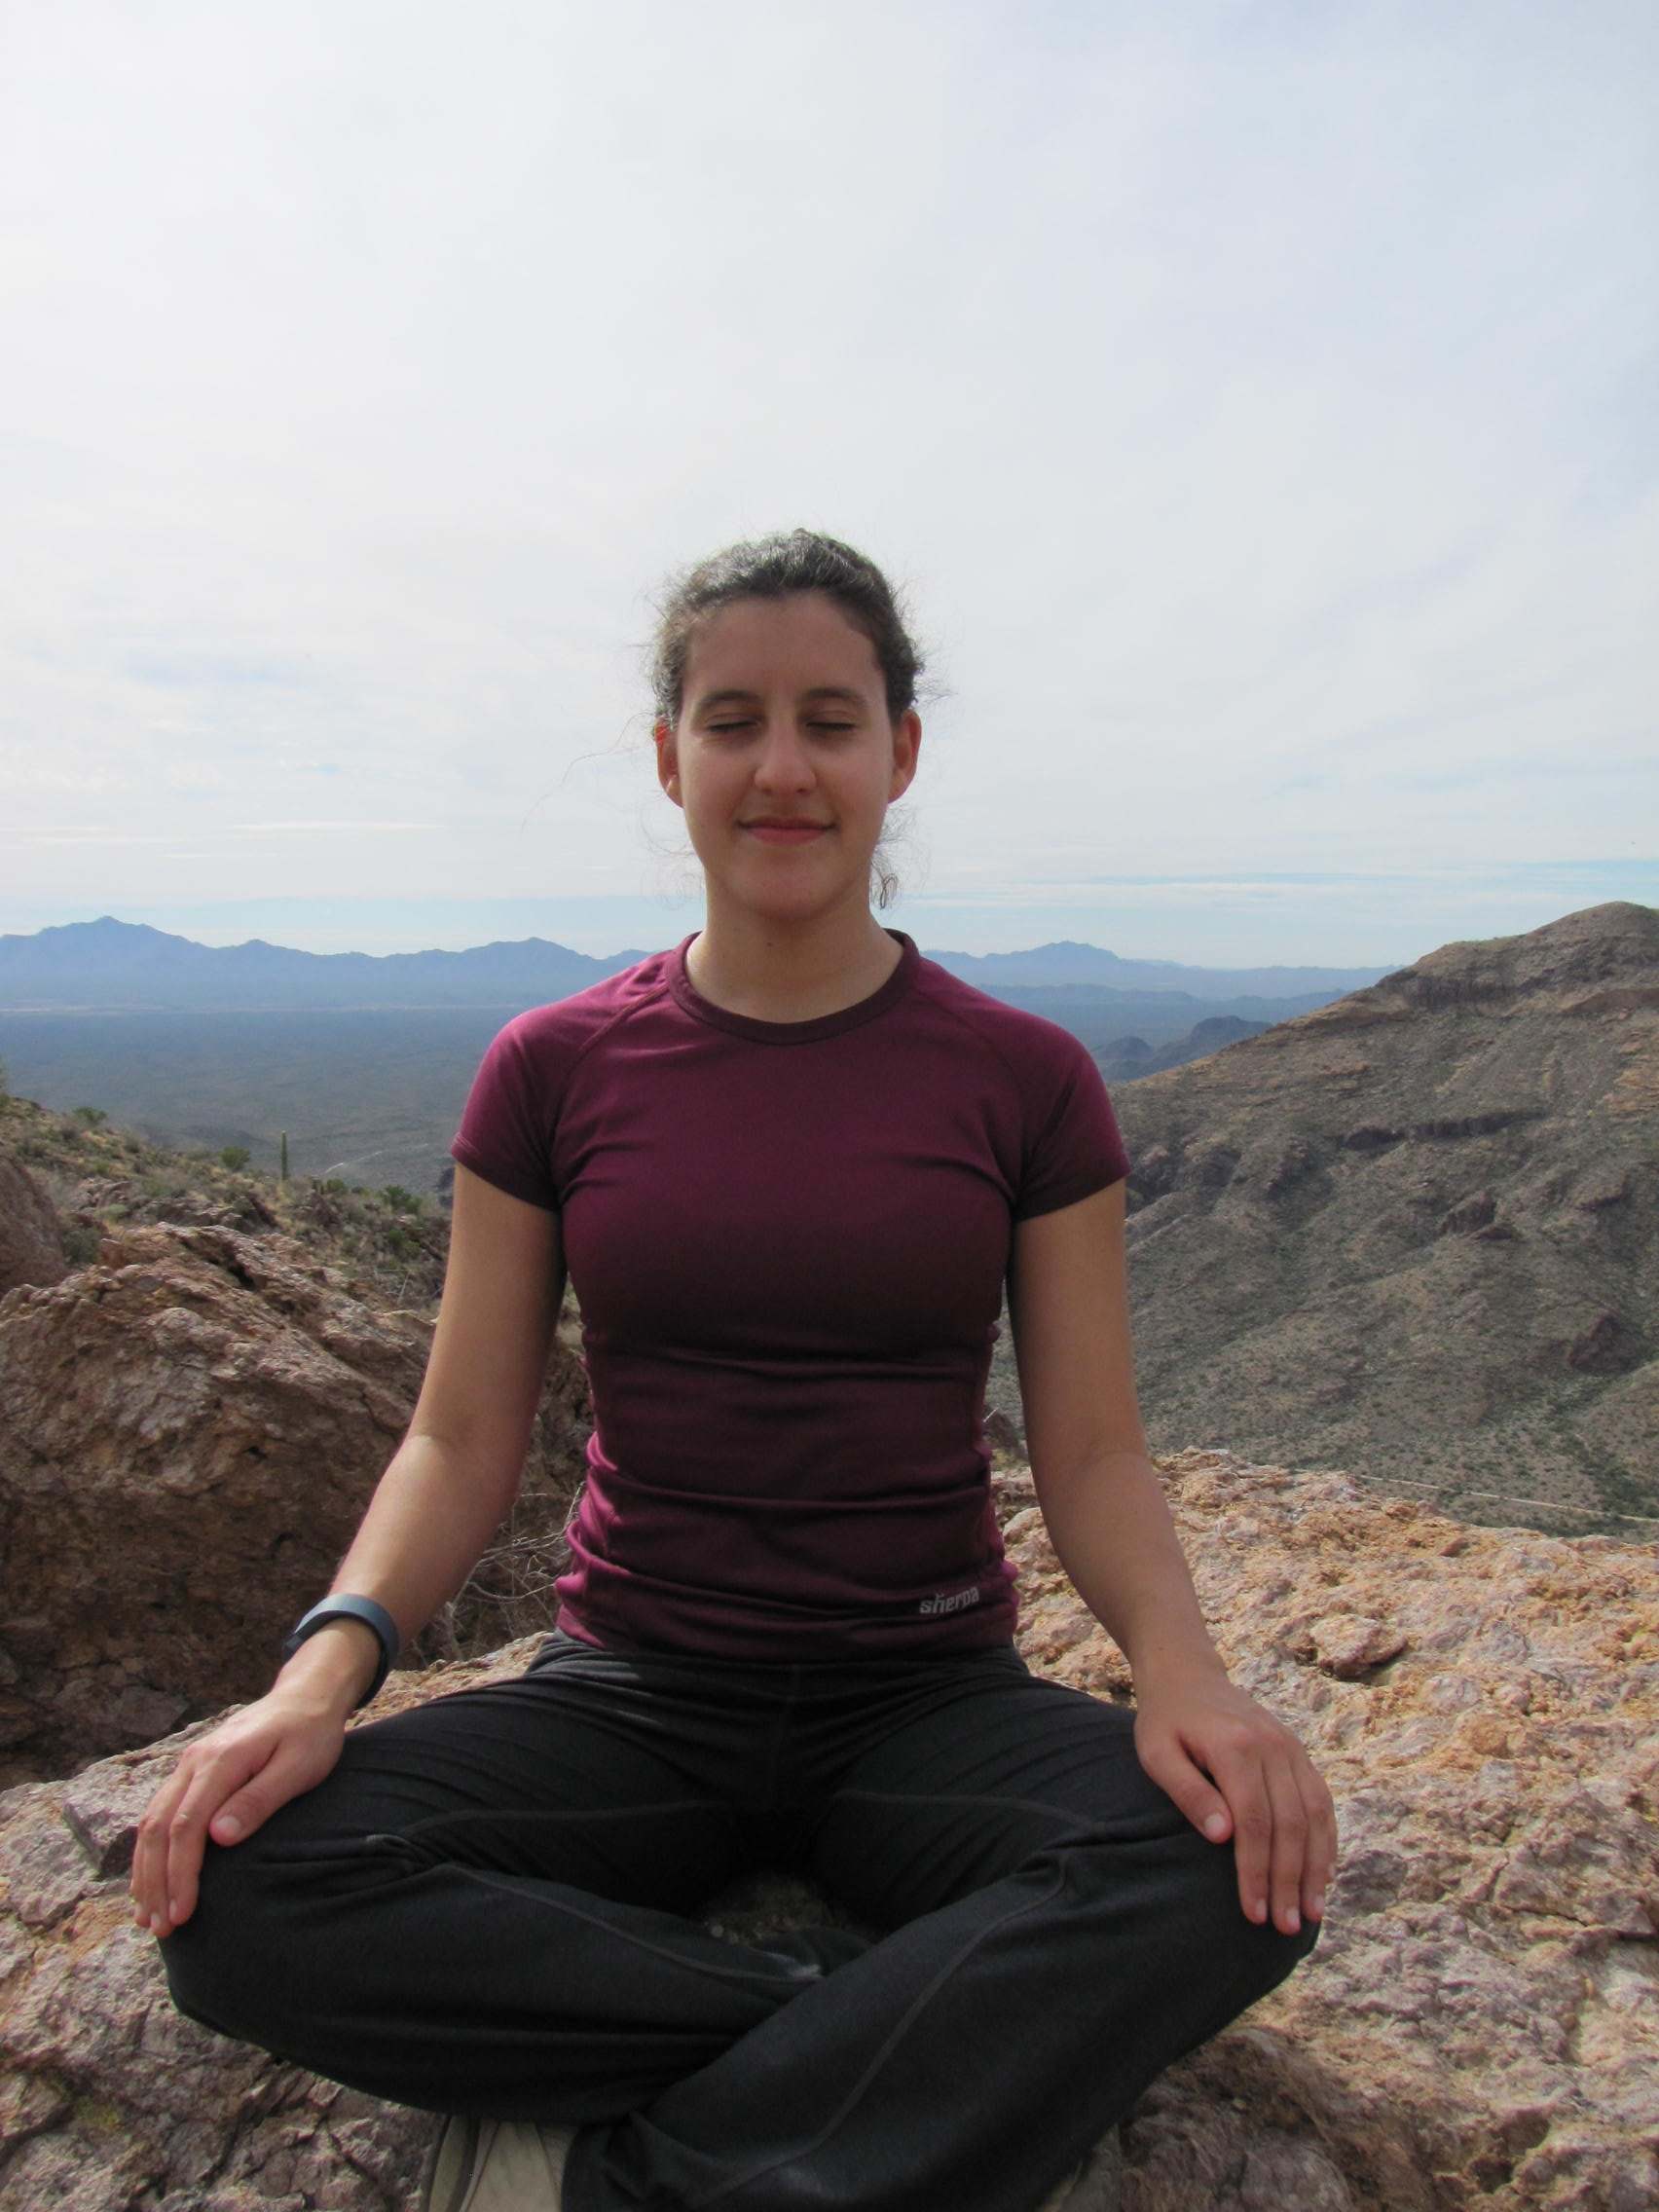 Sitting yoga pose on a mountain